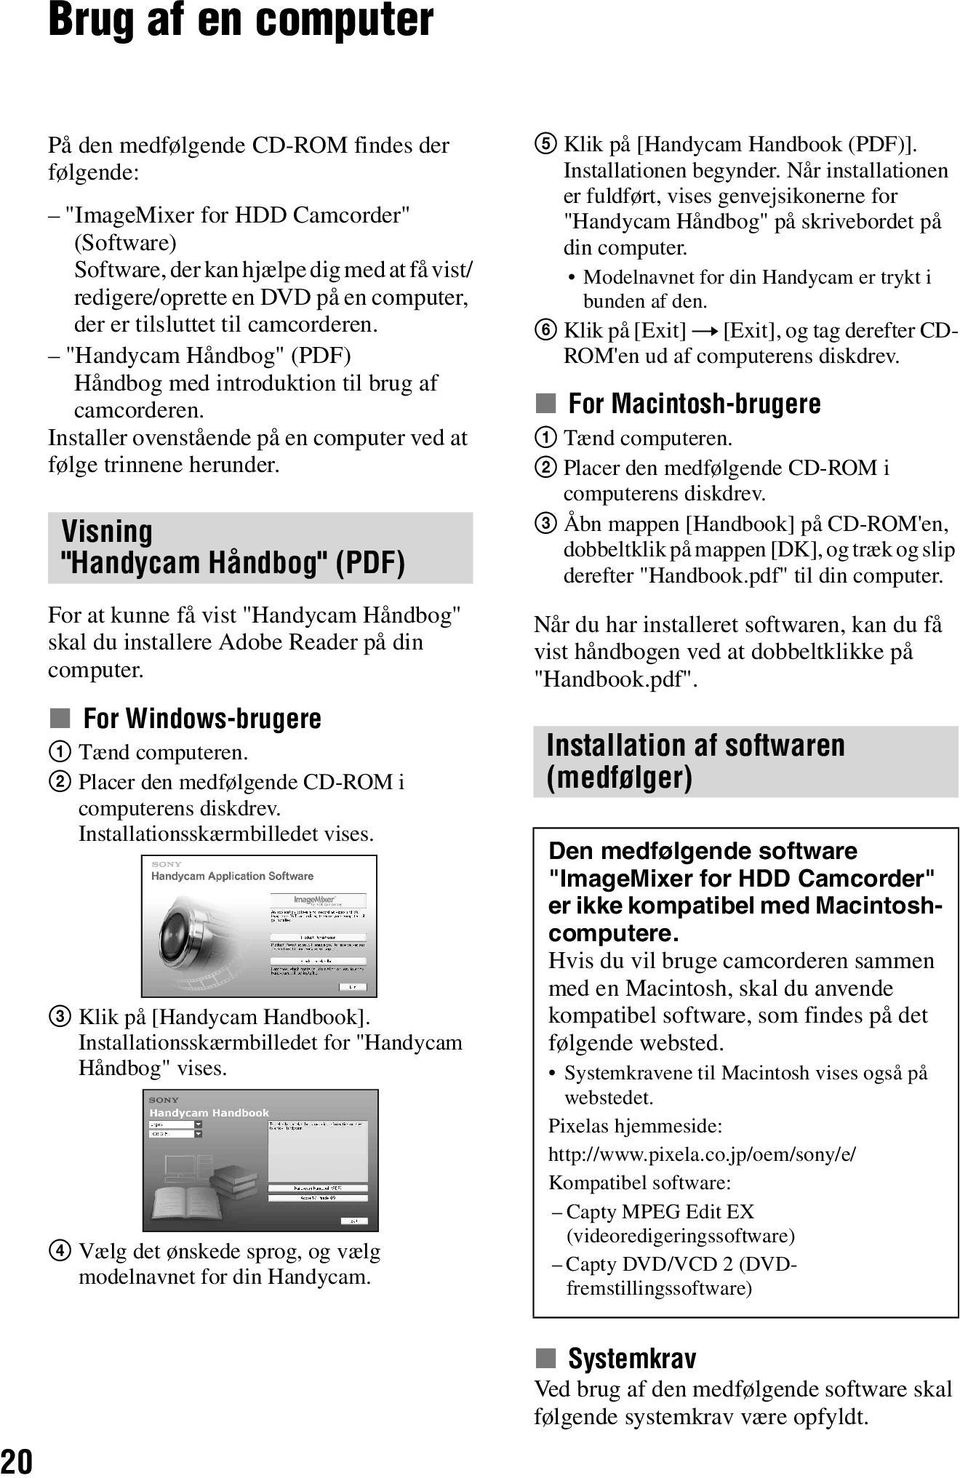 Visning "Handycam Håndbog" (PDF) For at kunne få vist "Handycam Håndbog" skal du installere Adobe Reader på din computer. x For Windows-brugere 1 Tænd computeren.